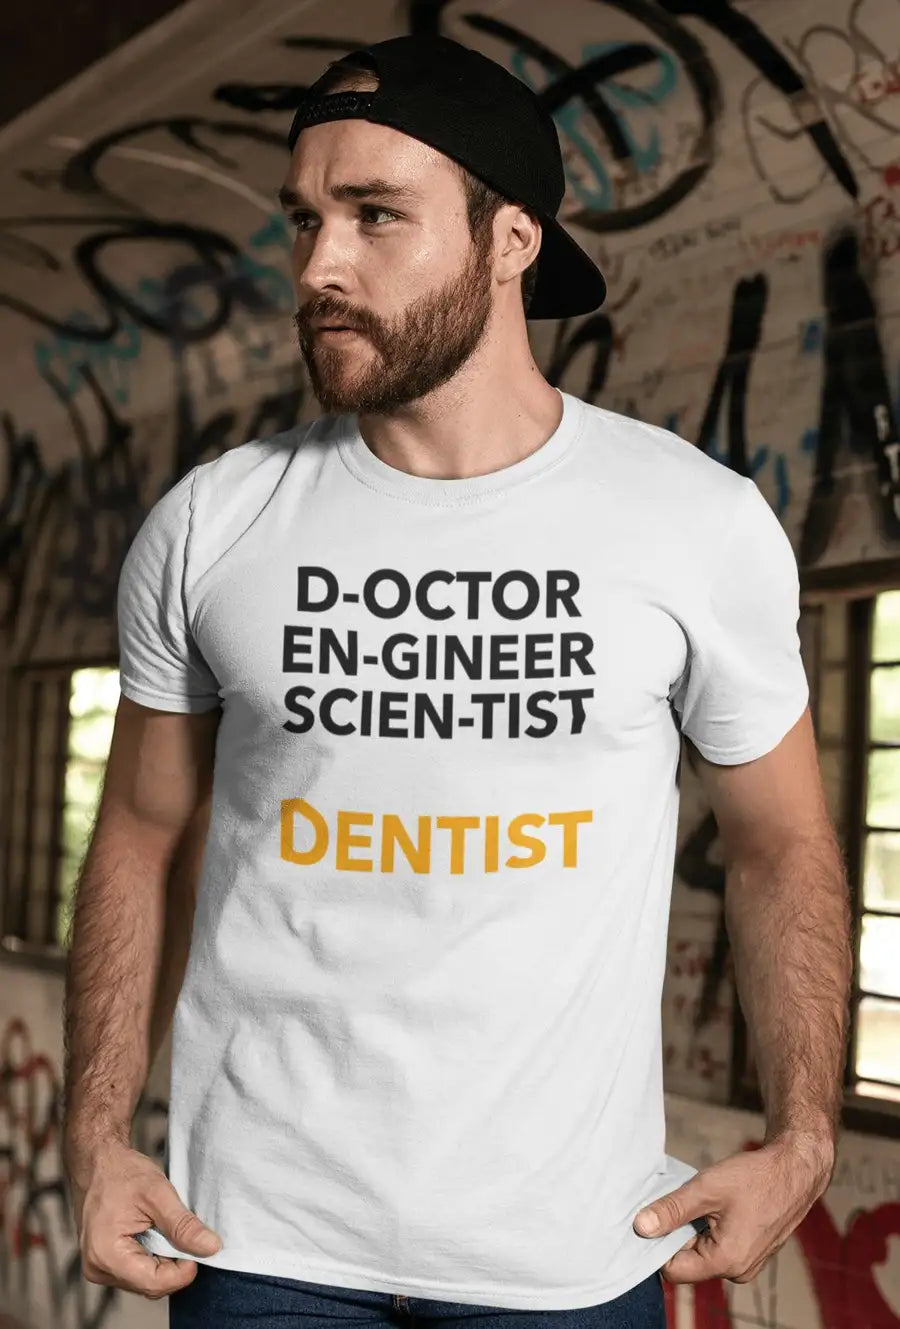 Dentist "Pioneer of 3 Skills" White T-Shirt | Premium Design | Catch My Drift India - Catch My Drift India Clothing clothing, dentist, made in india, shirt, t shirt, tshirt, white